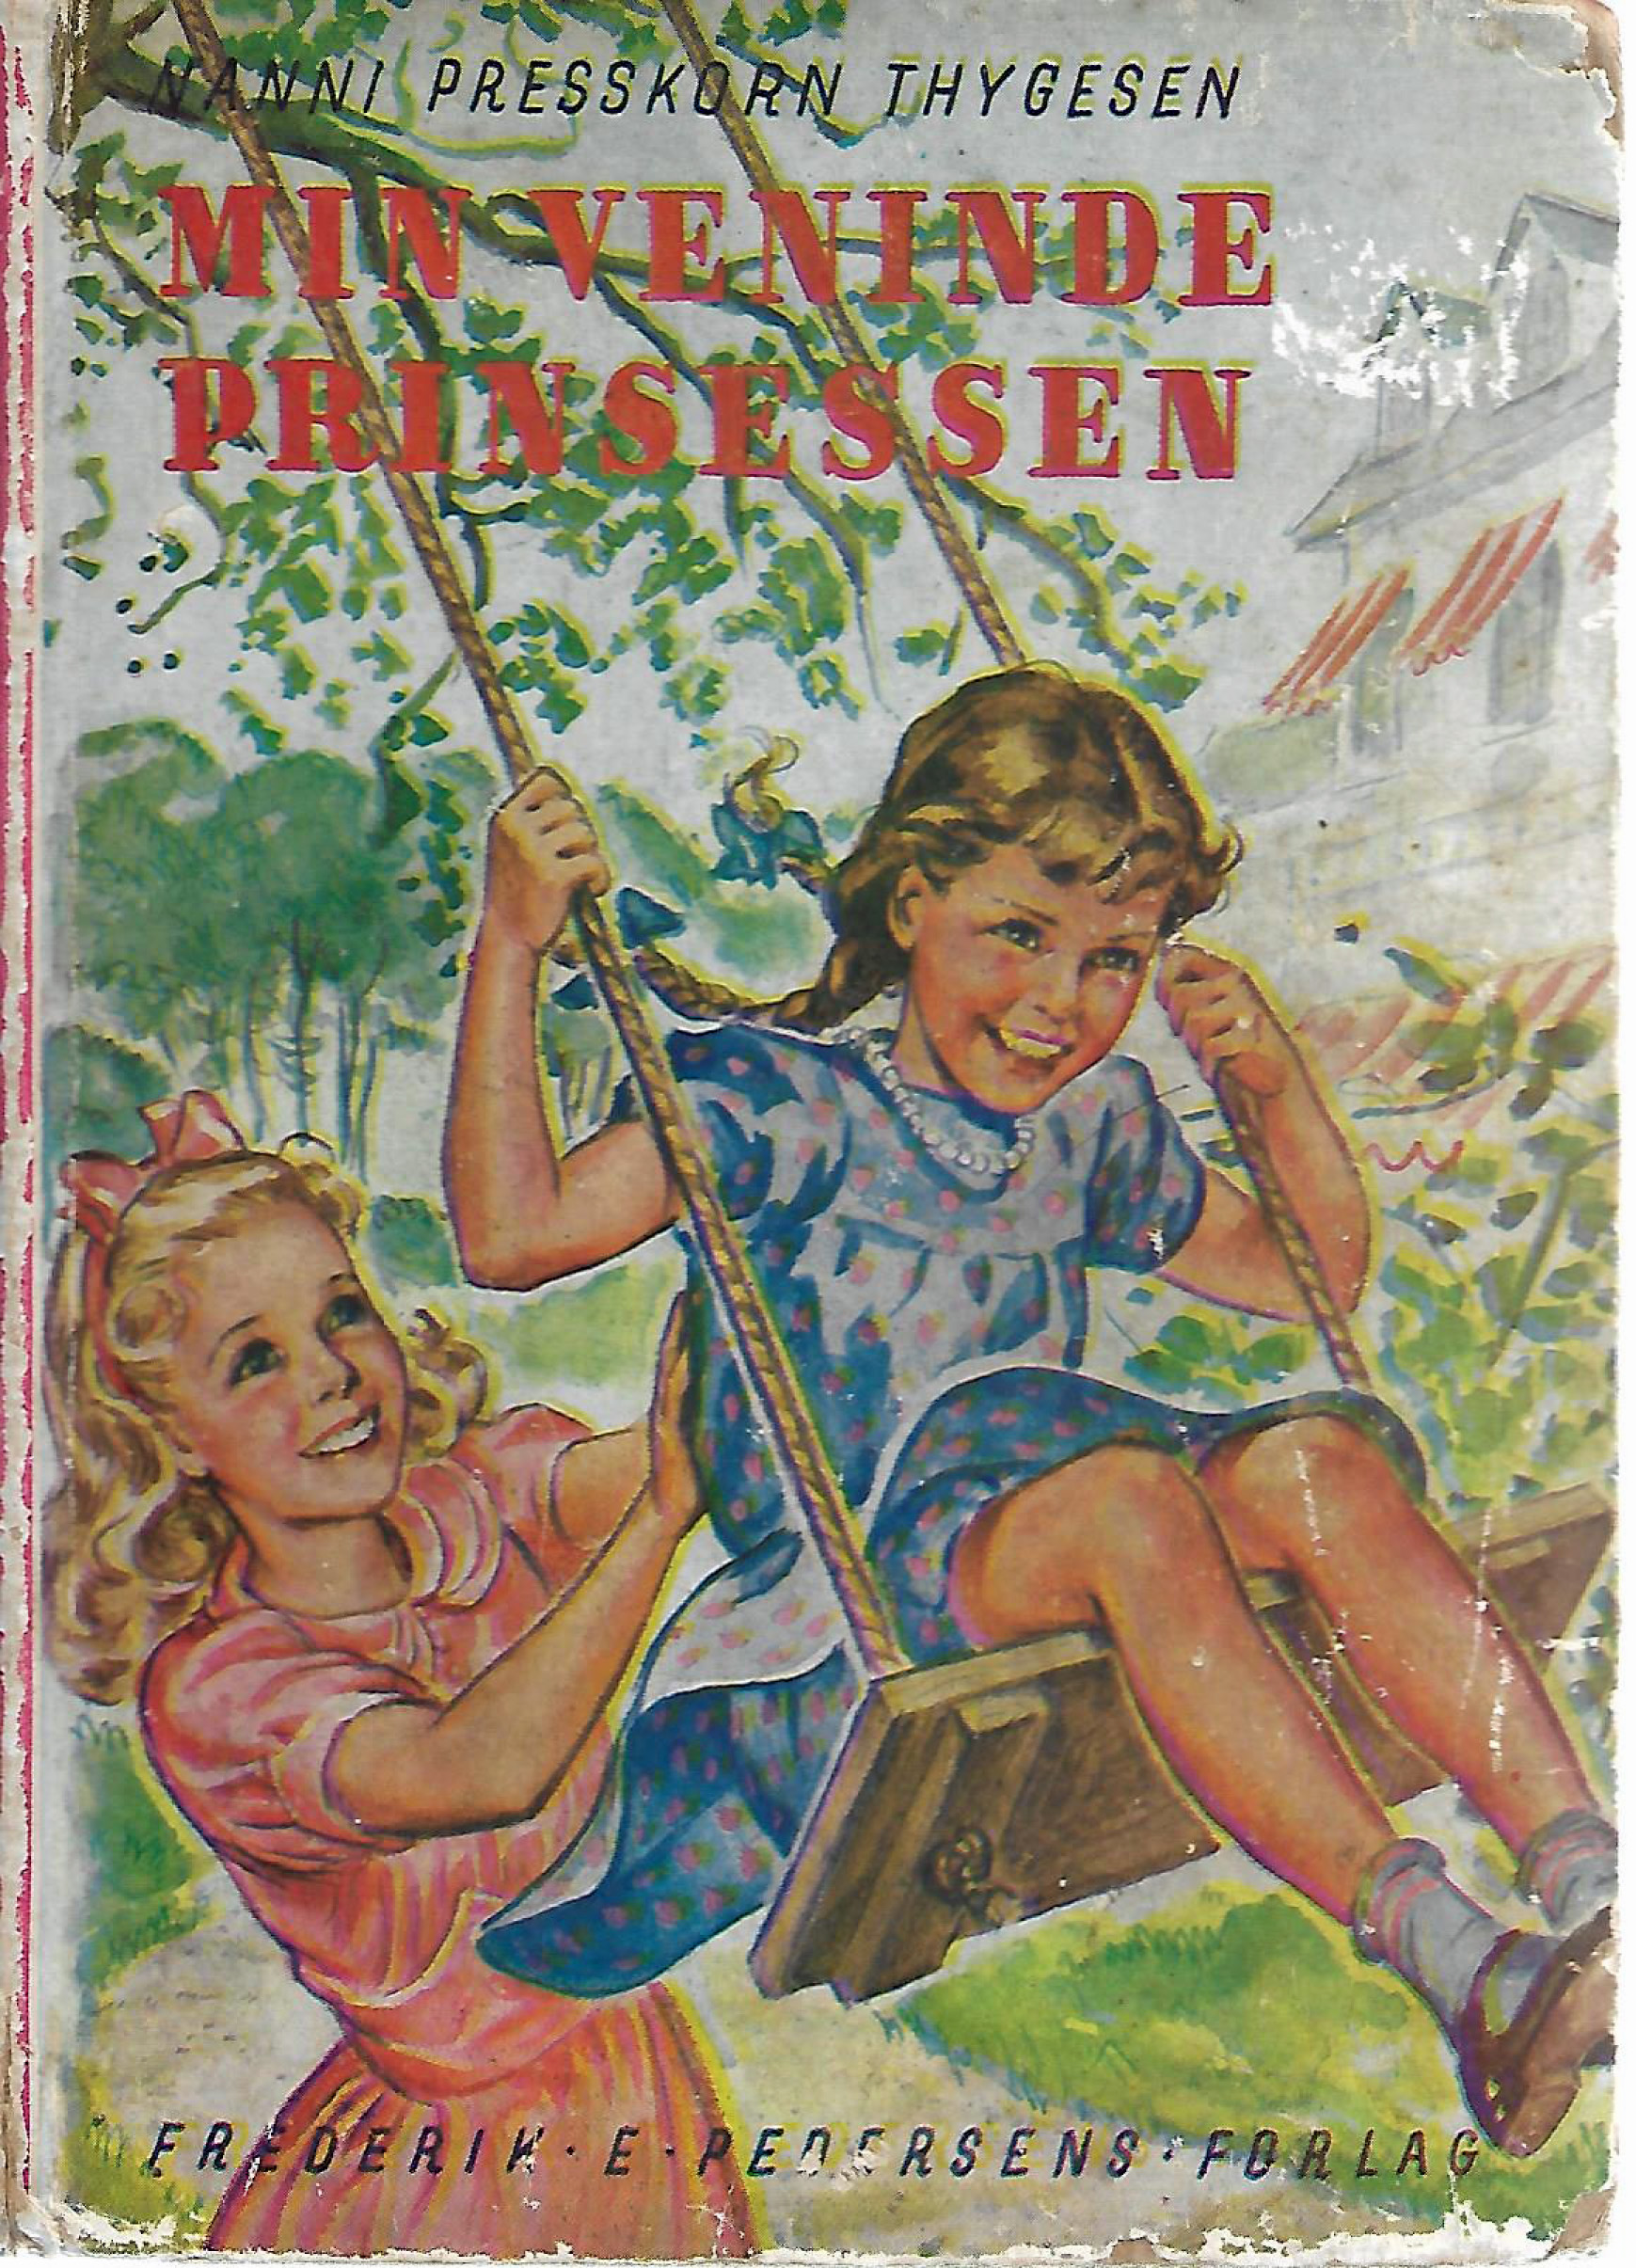 Min veninde prinsessen - Nanni Presskorn-Thygesen 1941